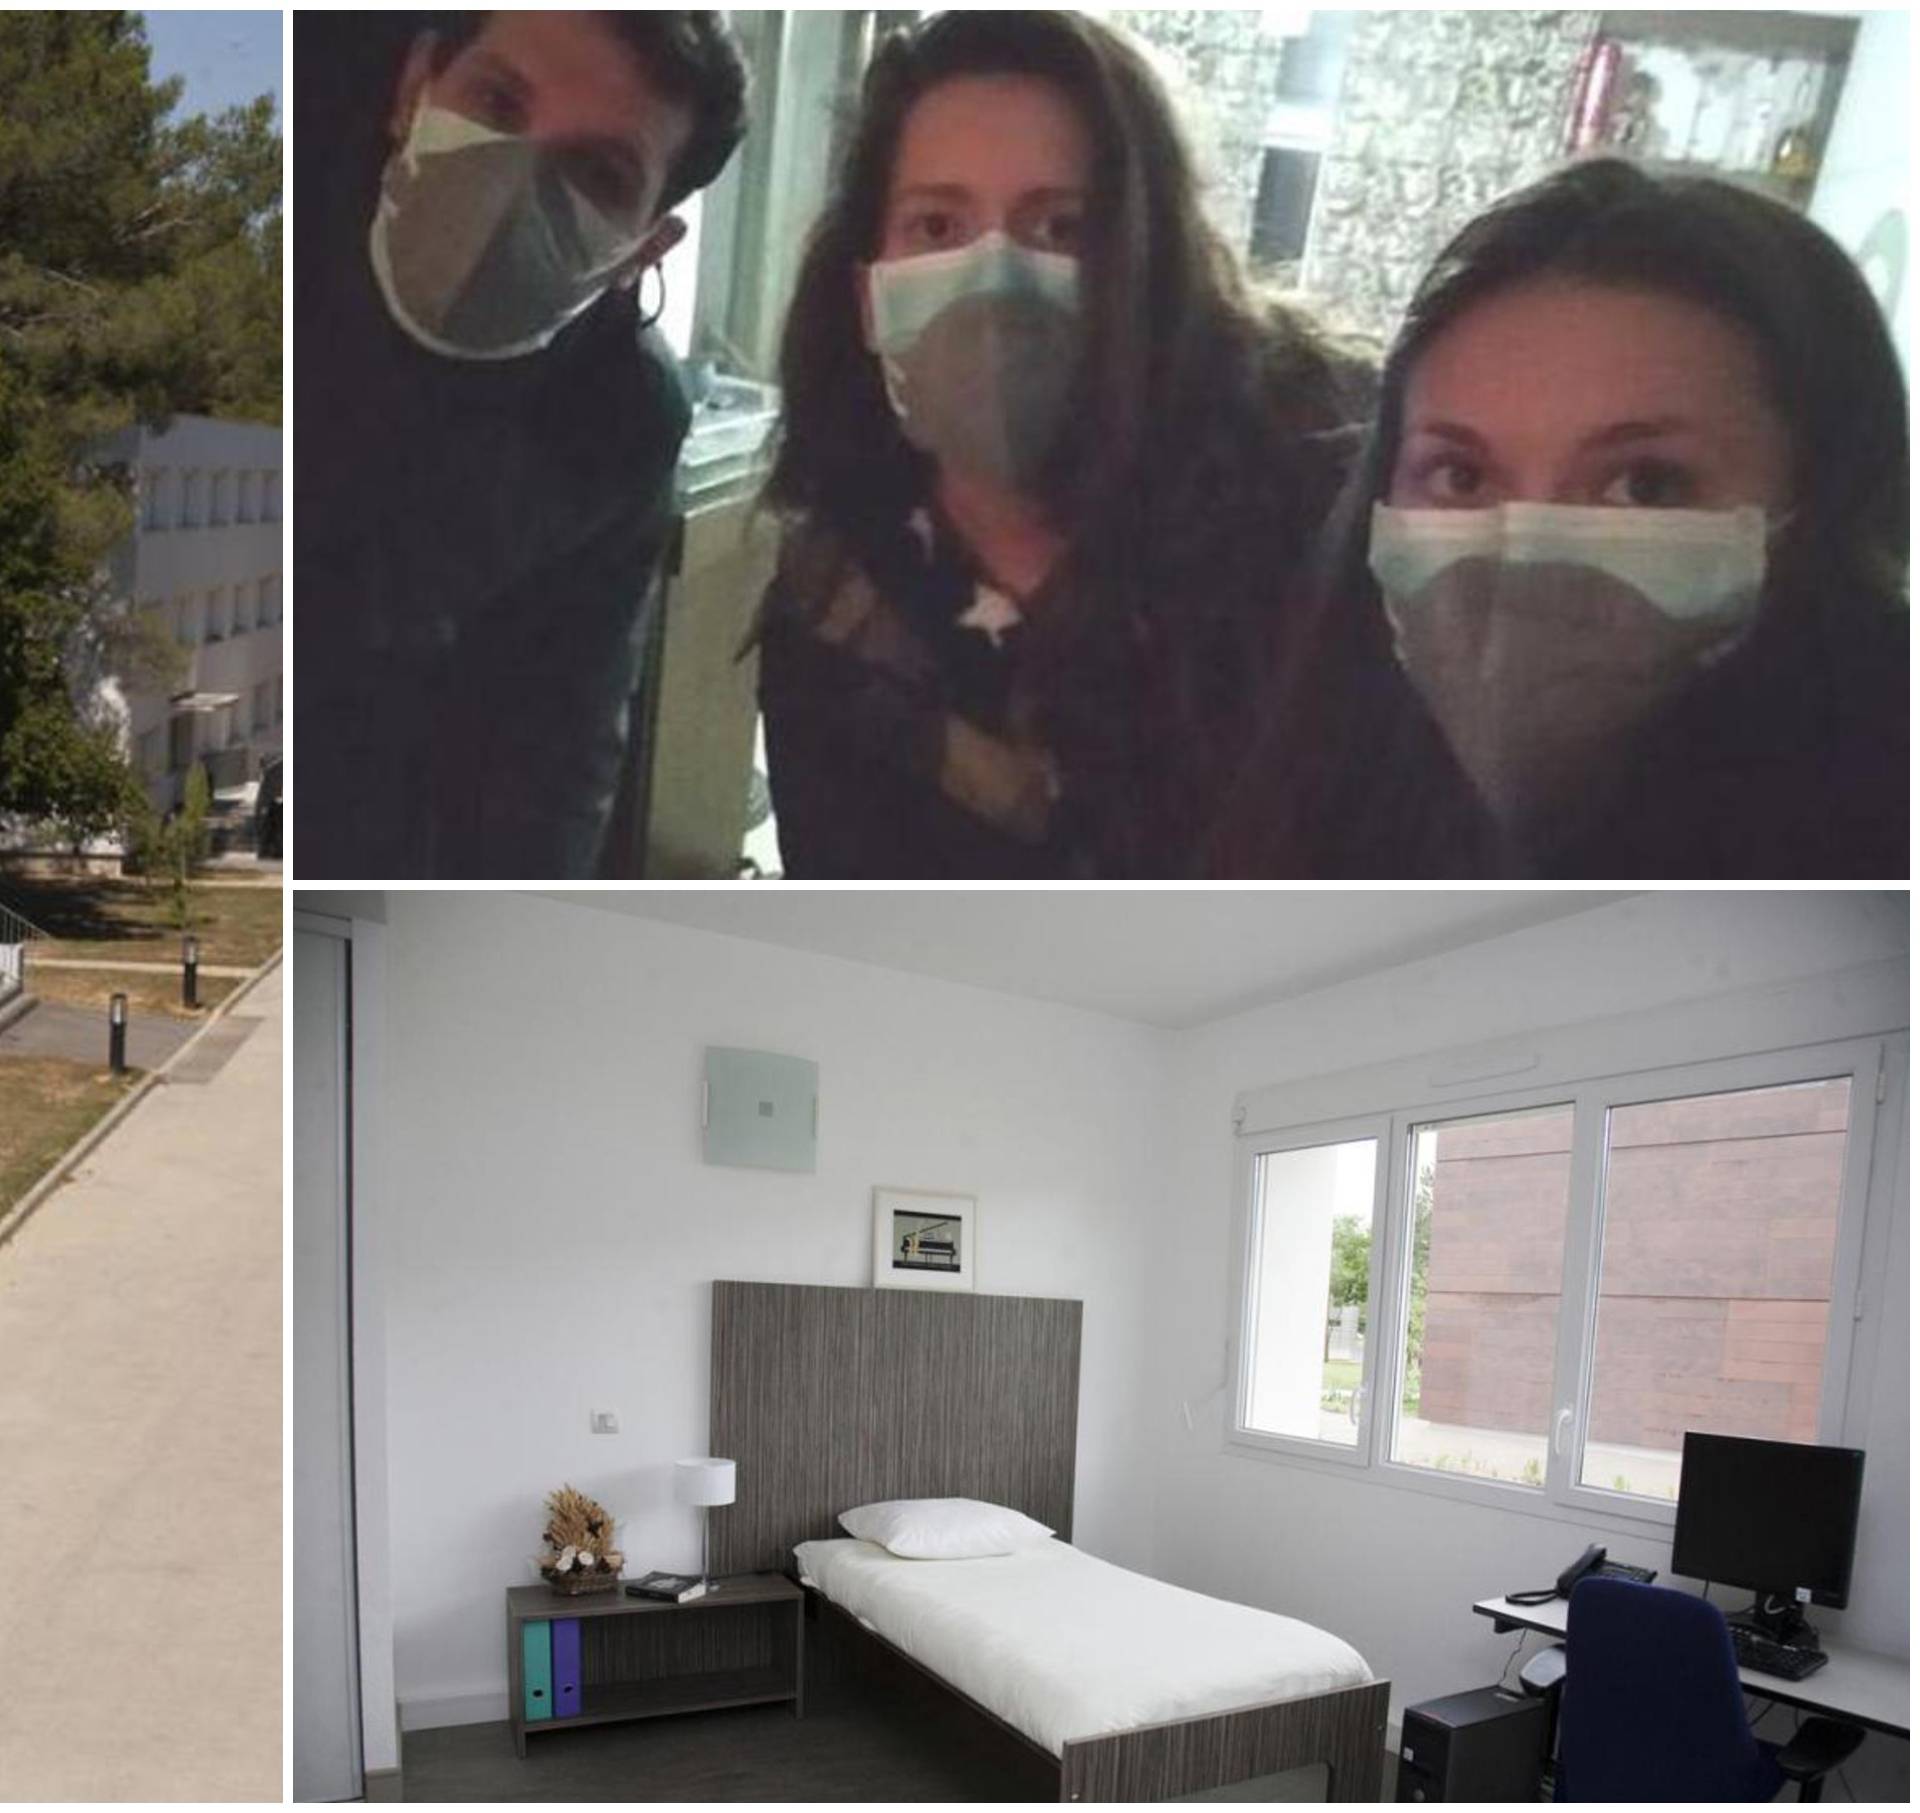 Hrvati u izolaciji: Boravit će u praznom kompleksu s 525 soba